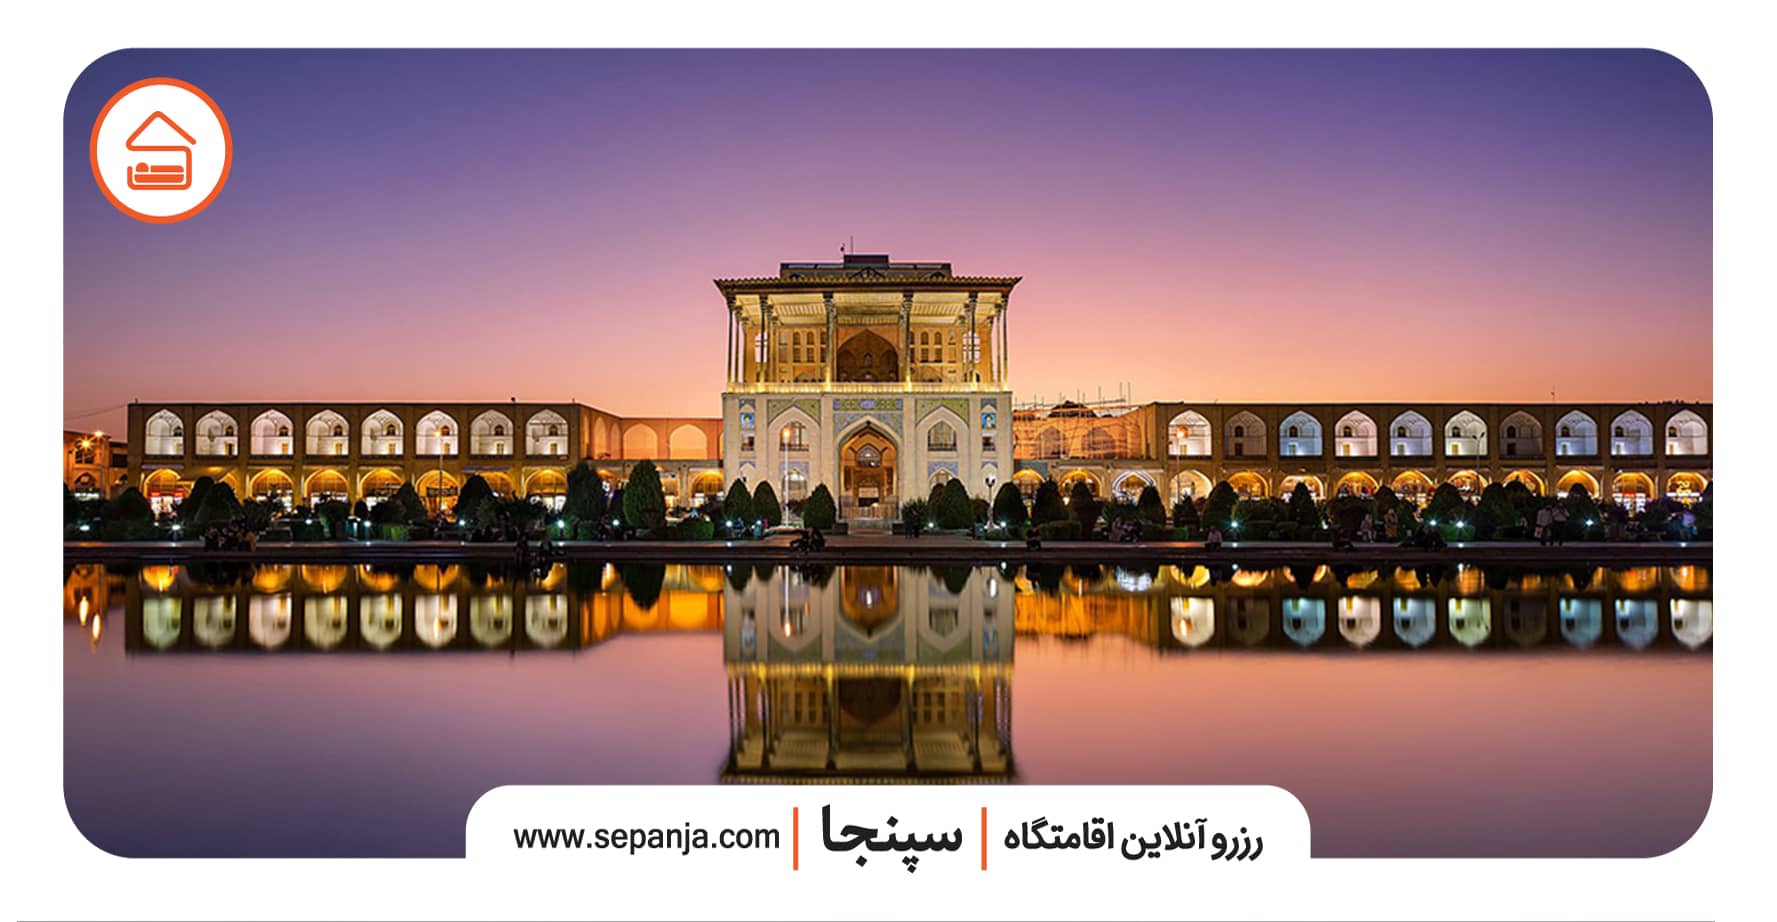 میدان نقش جهان اصفهان، شهرت و عظمت نصف جهان